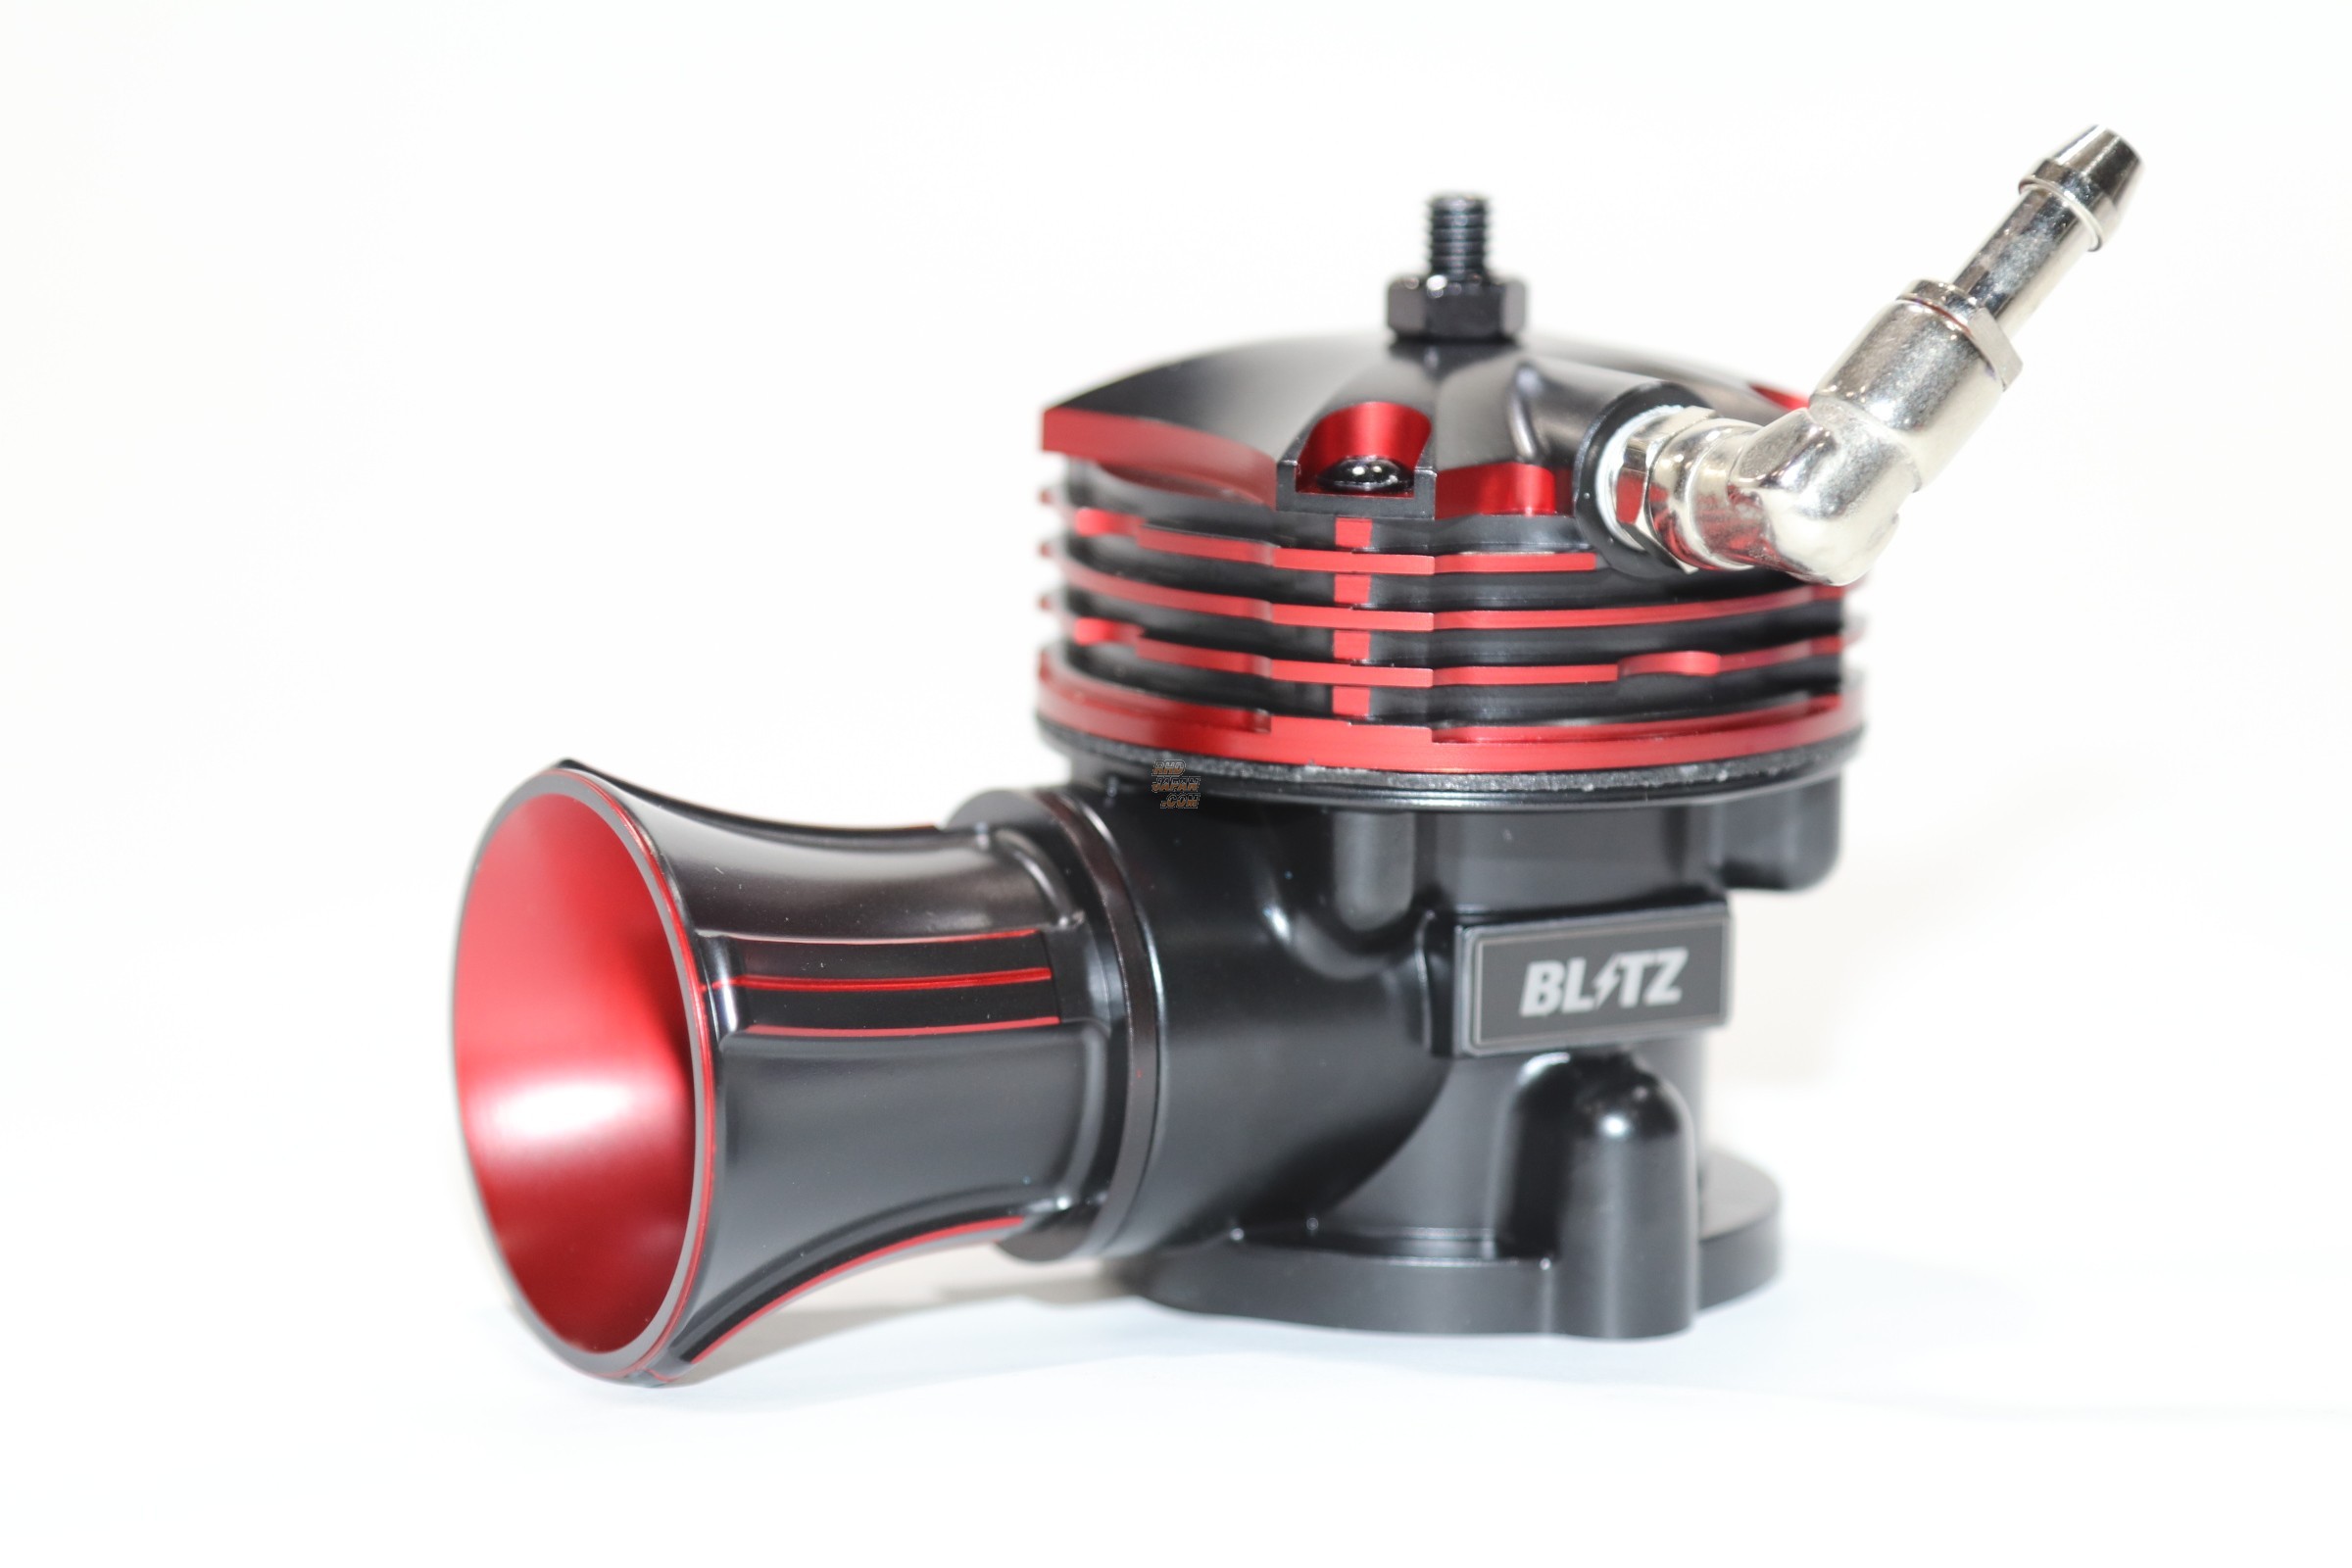 BLITZ(ブリッツ) SUPER SOUND BLOW OFF VALVE BR リリースタイプ(大気開放型) インプレッサ・WRX STI・フォレ - 2